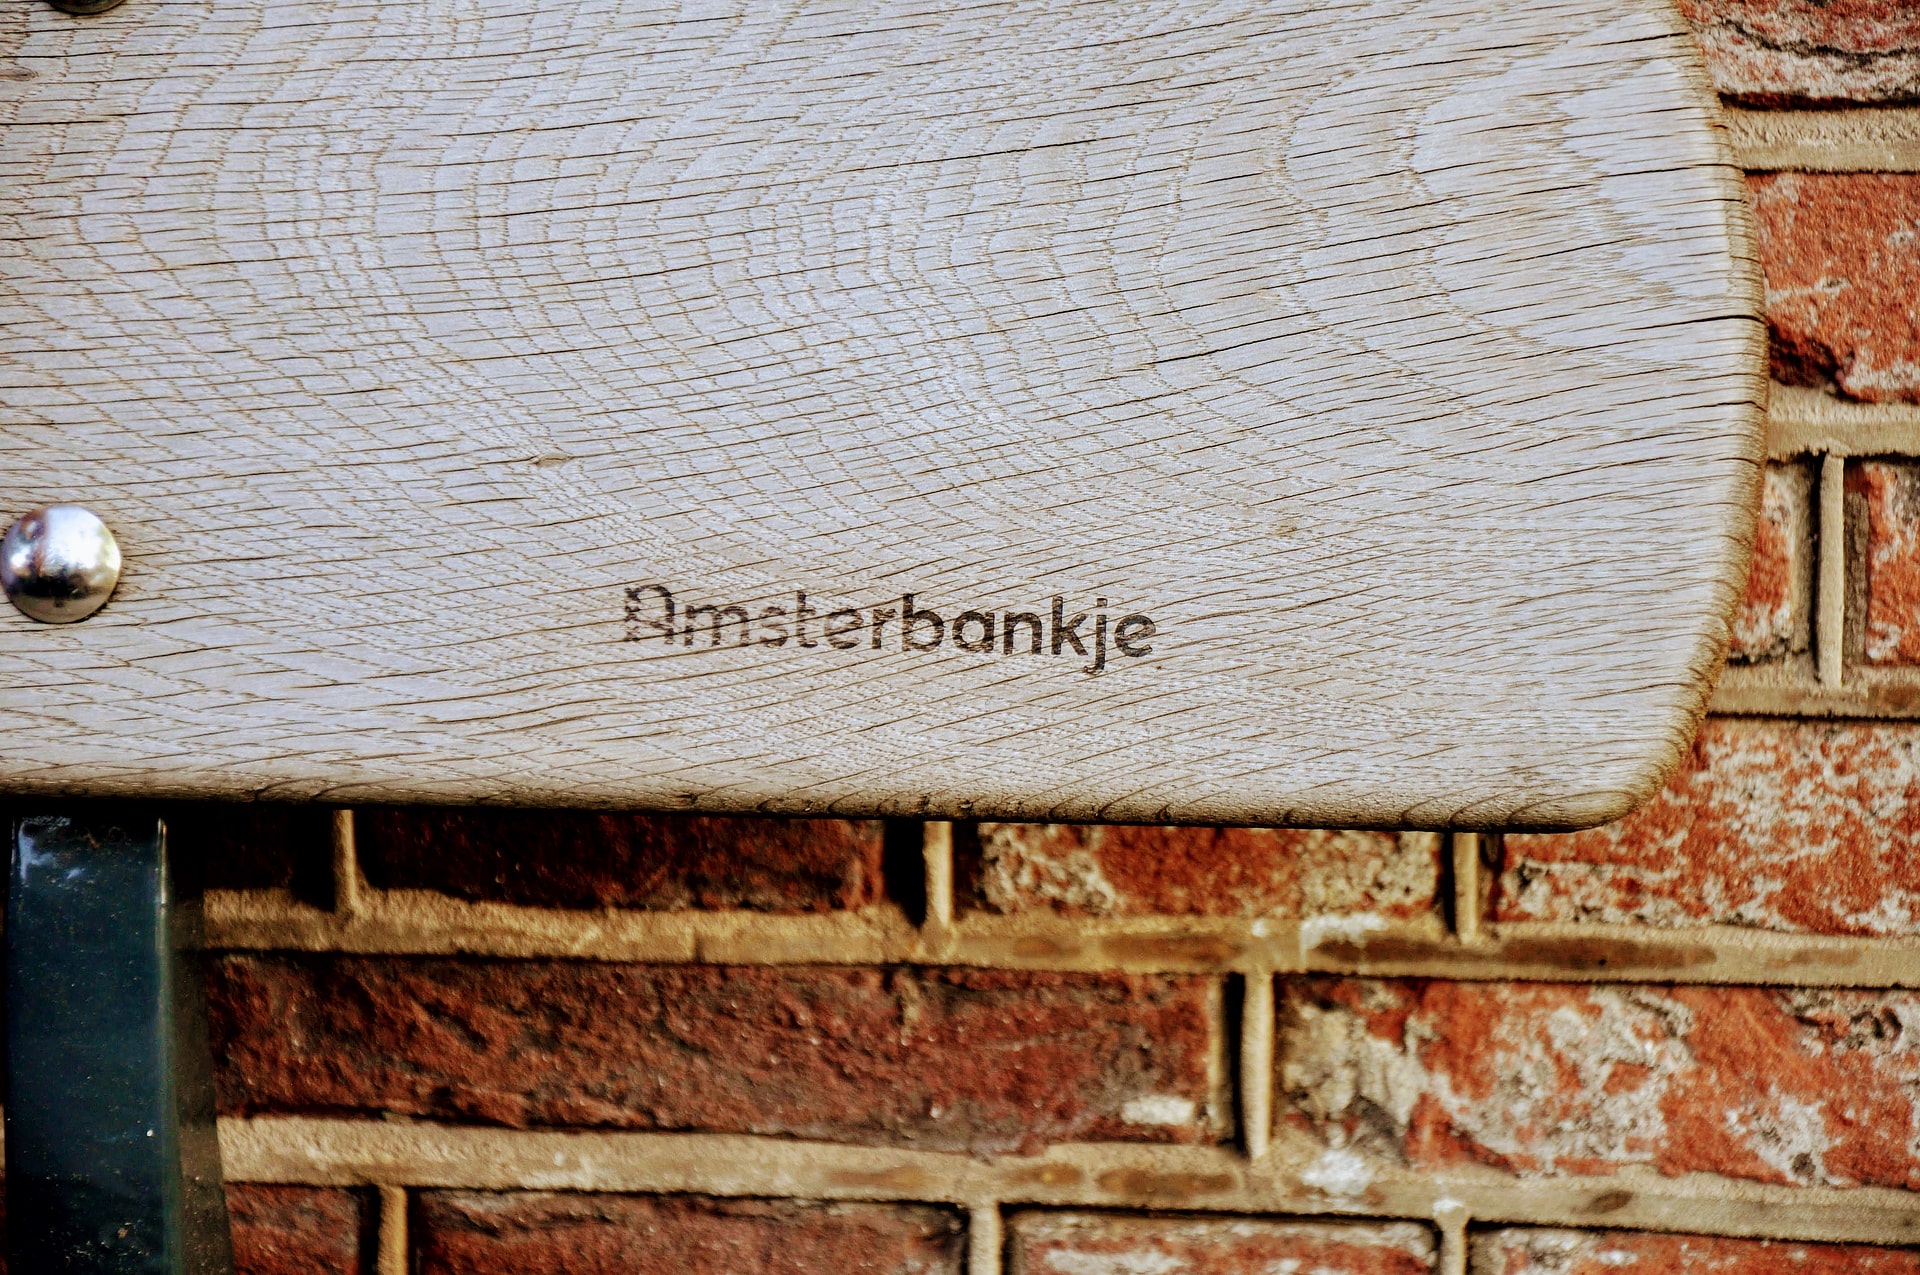 Een vergrijst gevelbankje voorzien van een Amsterbankje logo